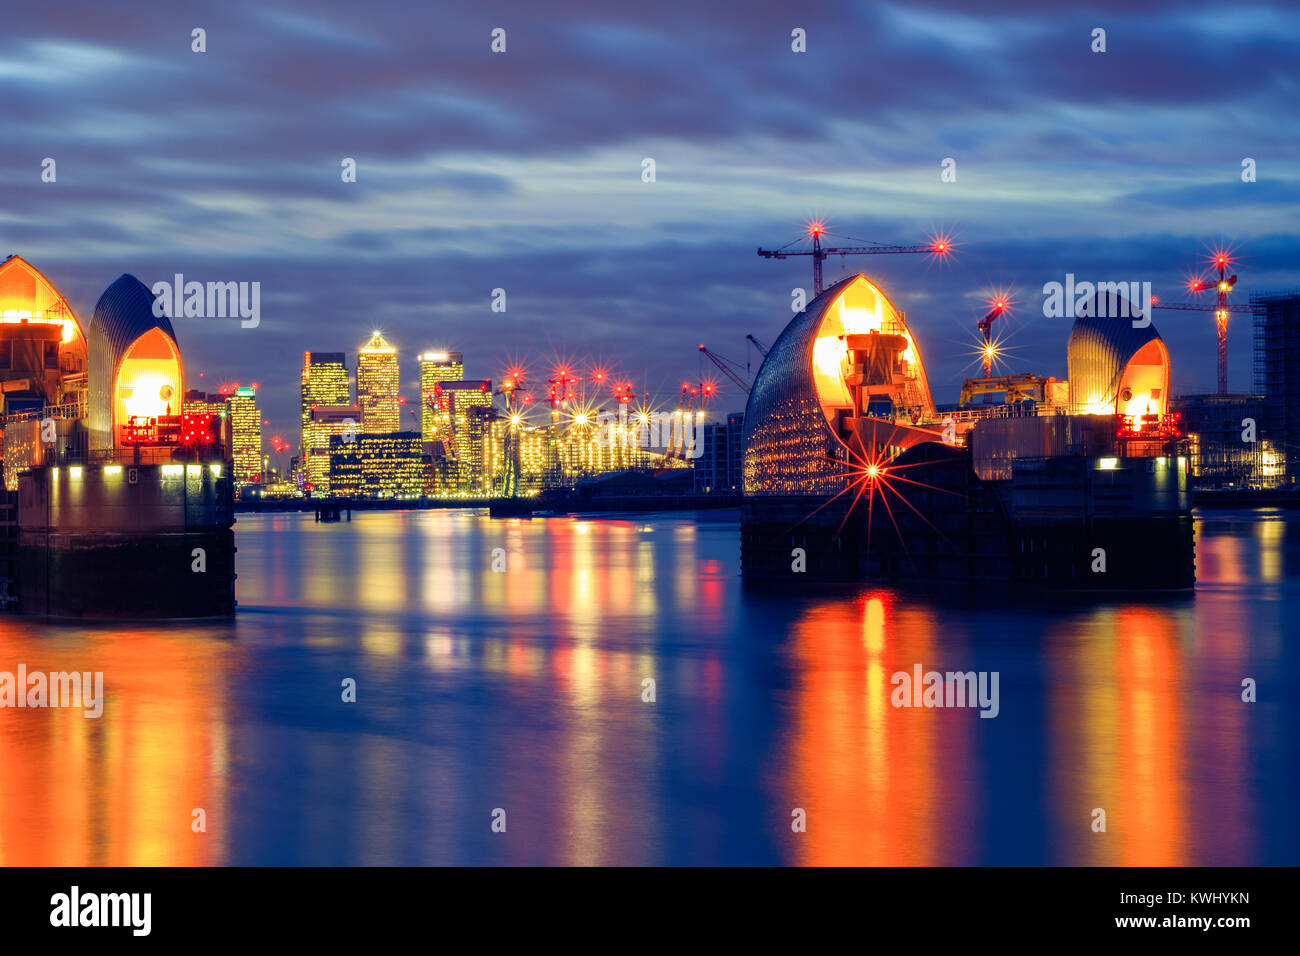 Fotos mit langer Belichtungszeit, Thames Barrier und Canary Wharf in London. Stockfoto